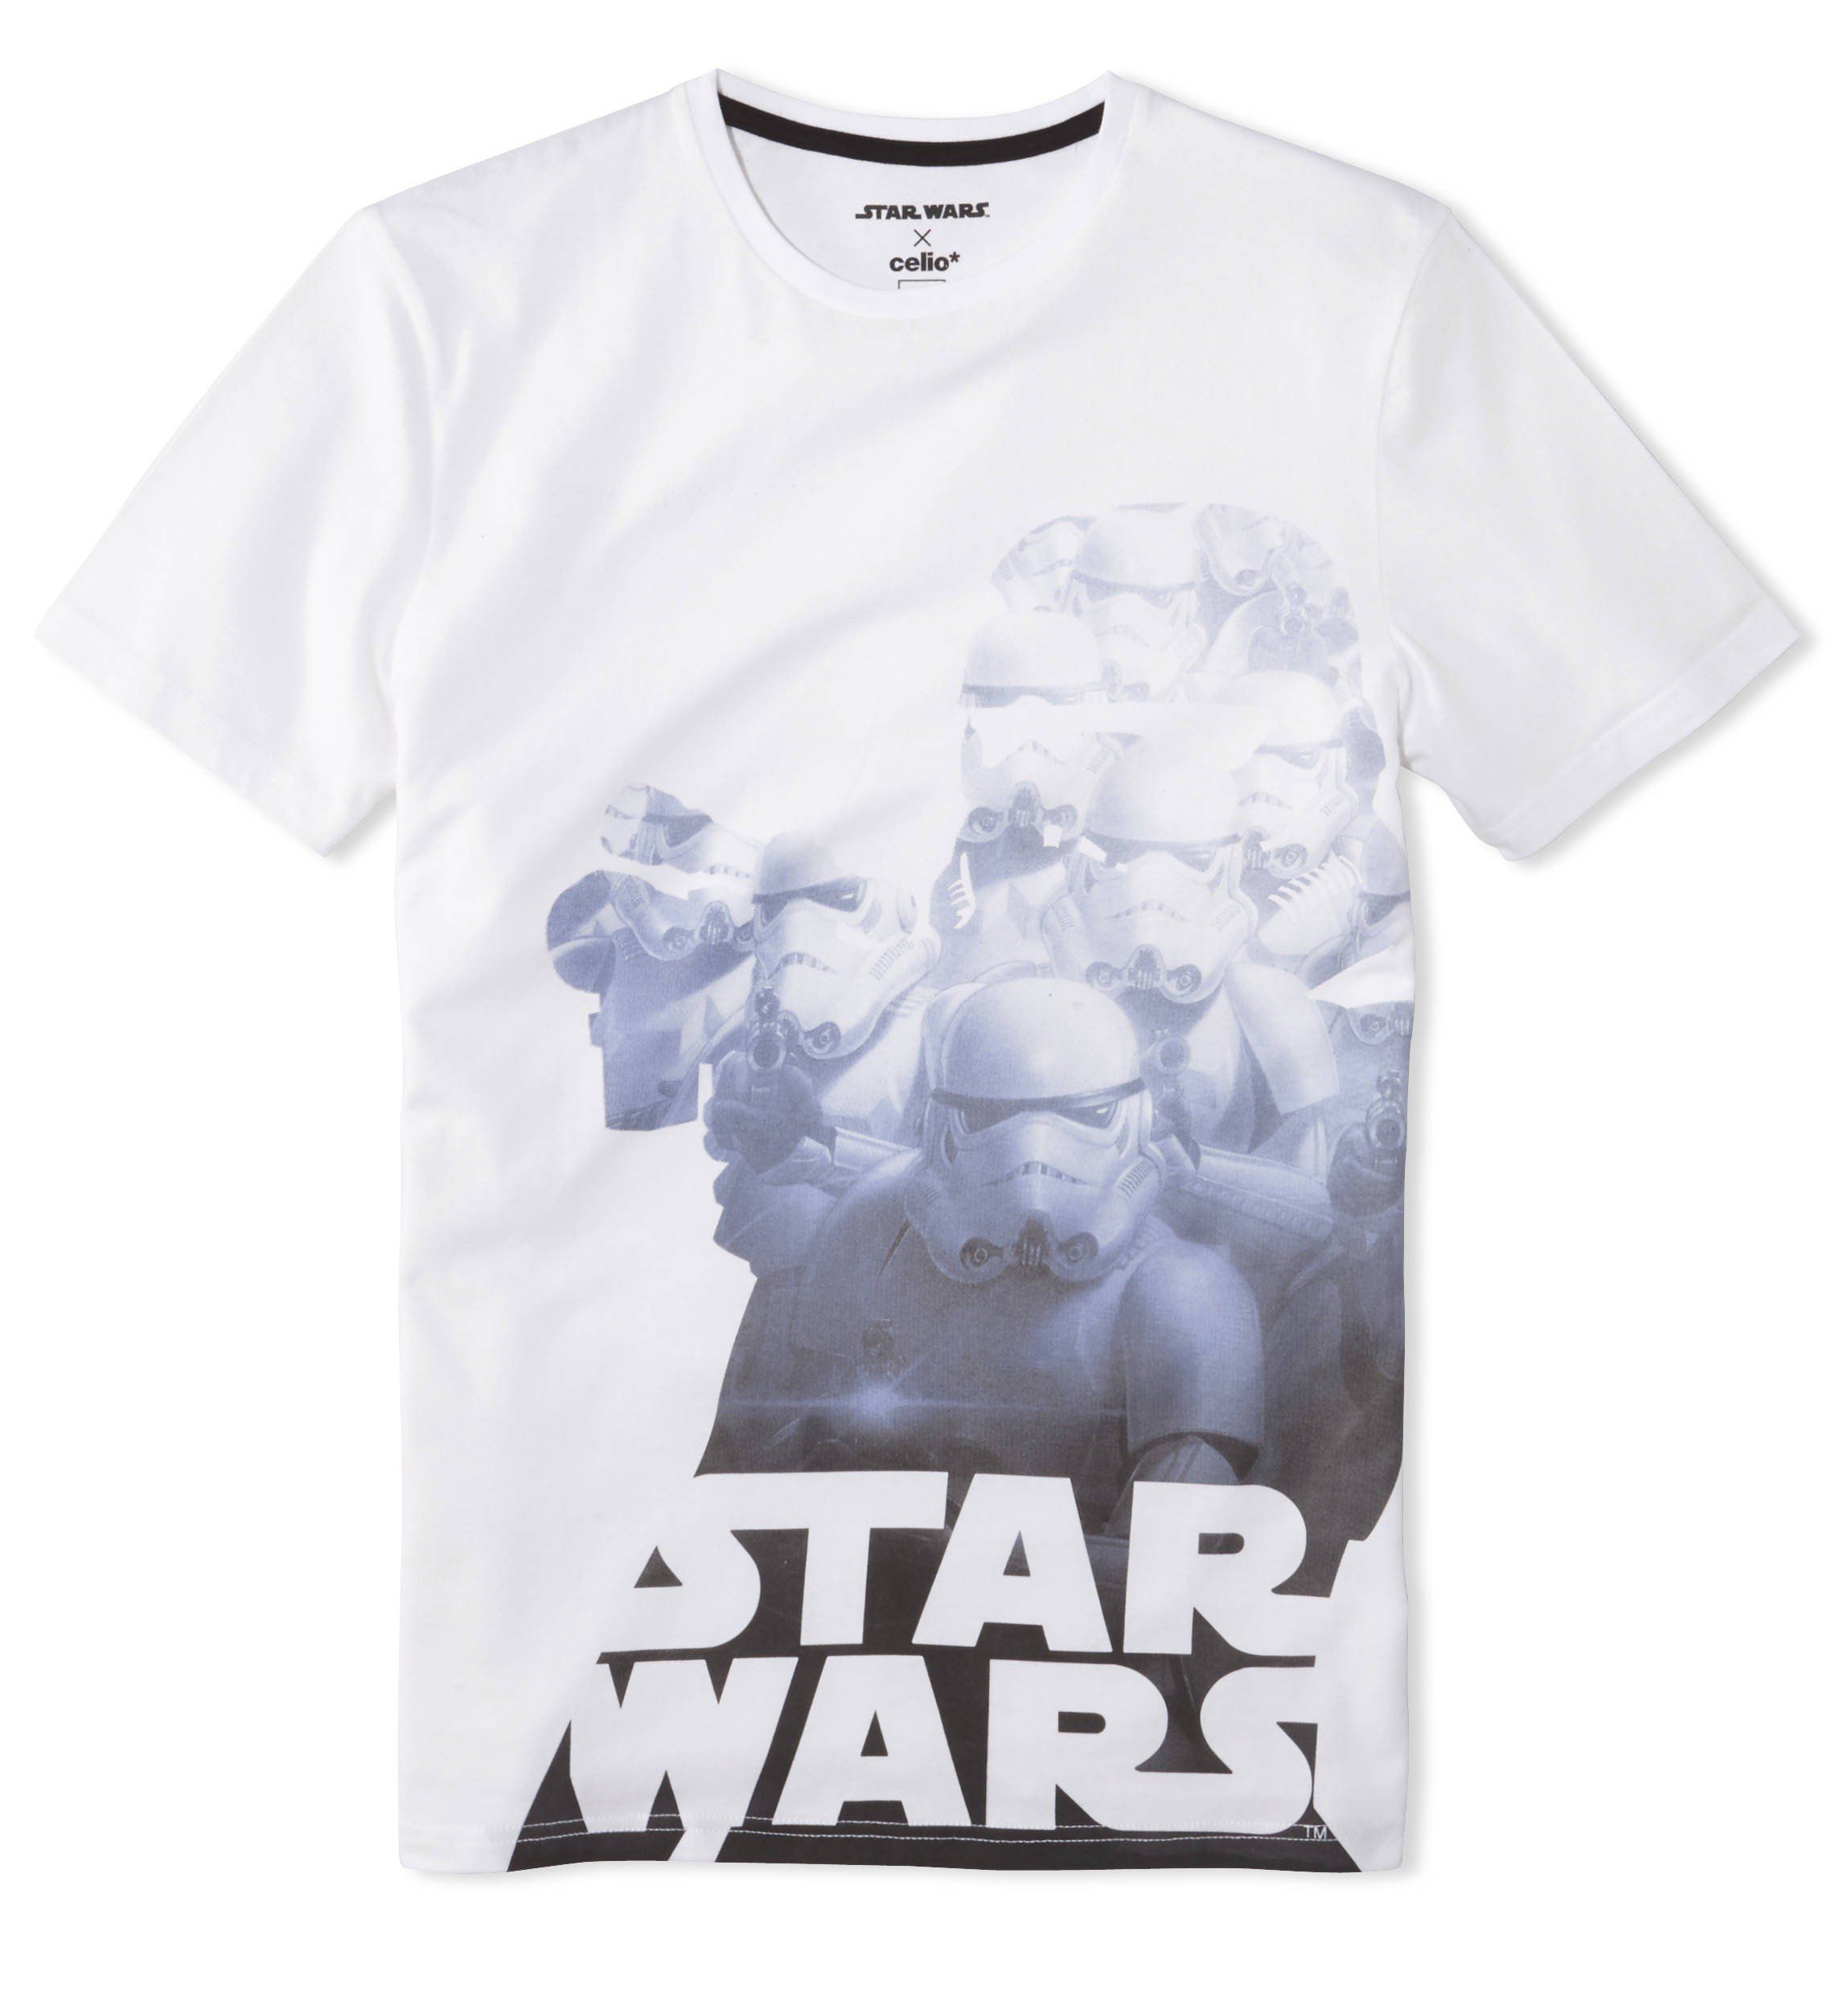 Celio* lance une superbe collection de T-Shirts et de goodies Star Wars #10